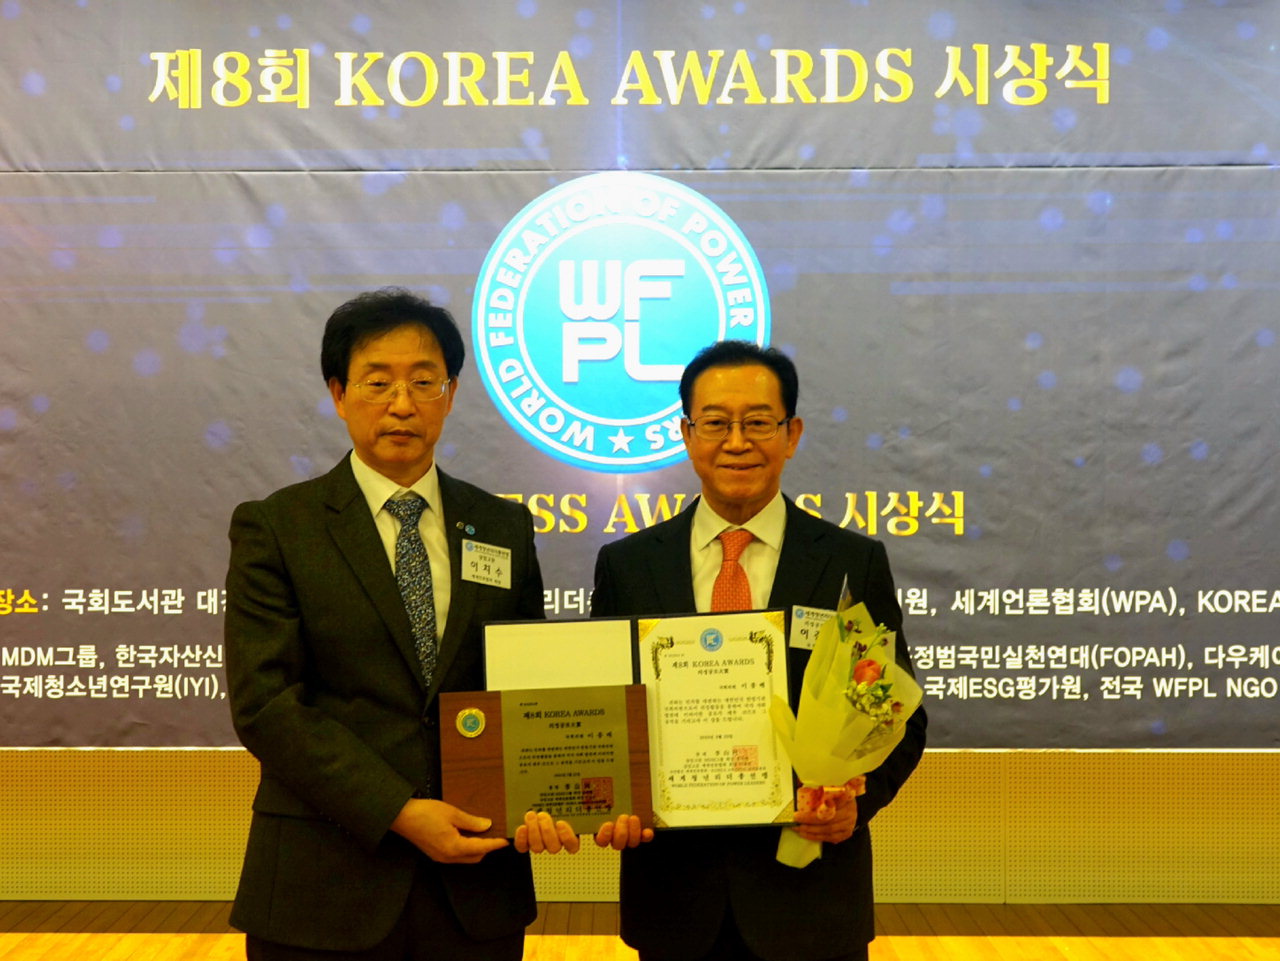 이종배 국민의힘 의원(충북 충주·사진 오른쪽)이 22일 세계언론협회가 선정한 '제8회 KOREA AWARDS'의정부문 의정공로대상을 수상했다.